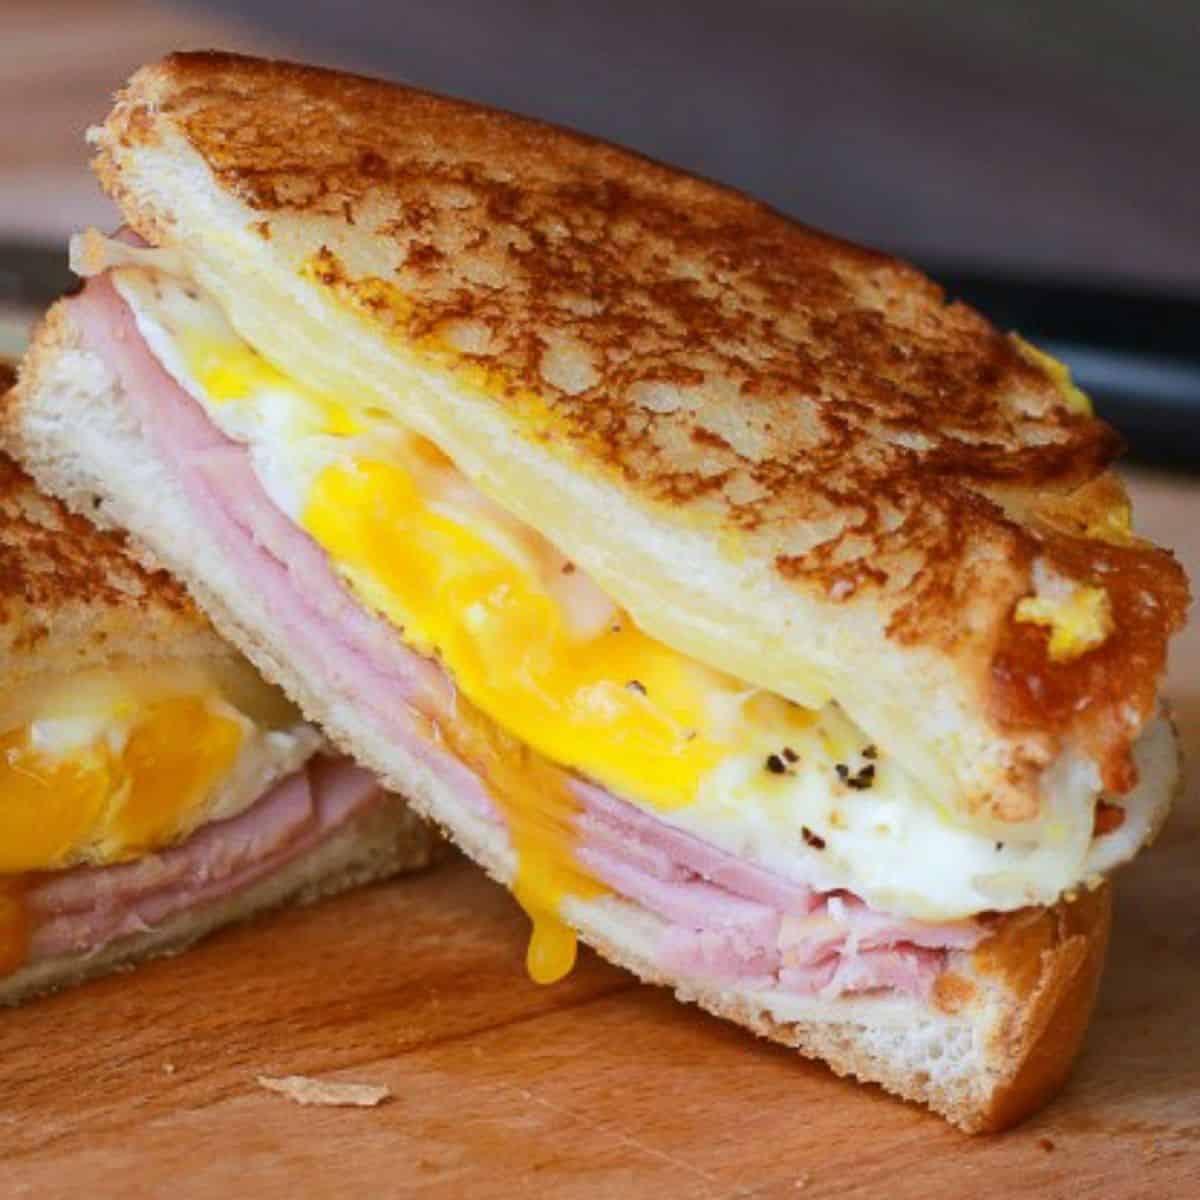 https://thecraftyblogstalker.com/wp-content/uploads/2021/06/ham-egg-cheese-grilled-sandwich-10.jpg